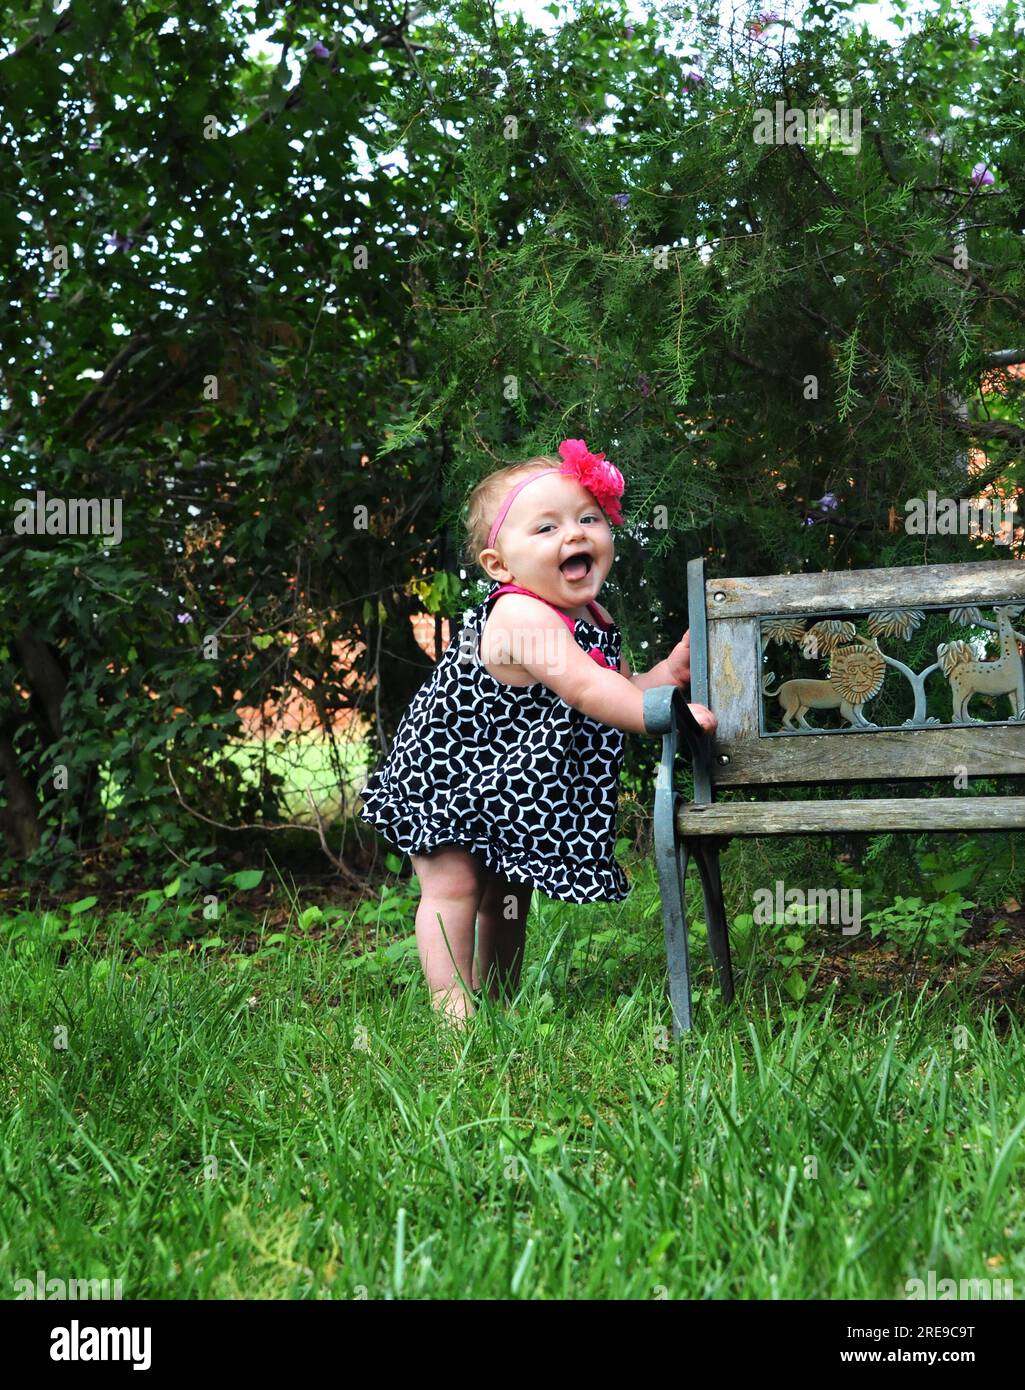 Bébé fille se tient sur un banc en bois et exprime sa joie en gargouillonnant et en ricotant. Elle est pieds nus et porte une robe de robe. Bande de fleur rose encercle Banque D'Images